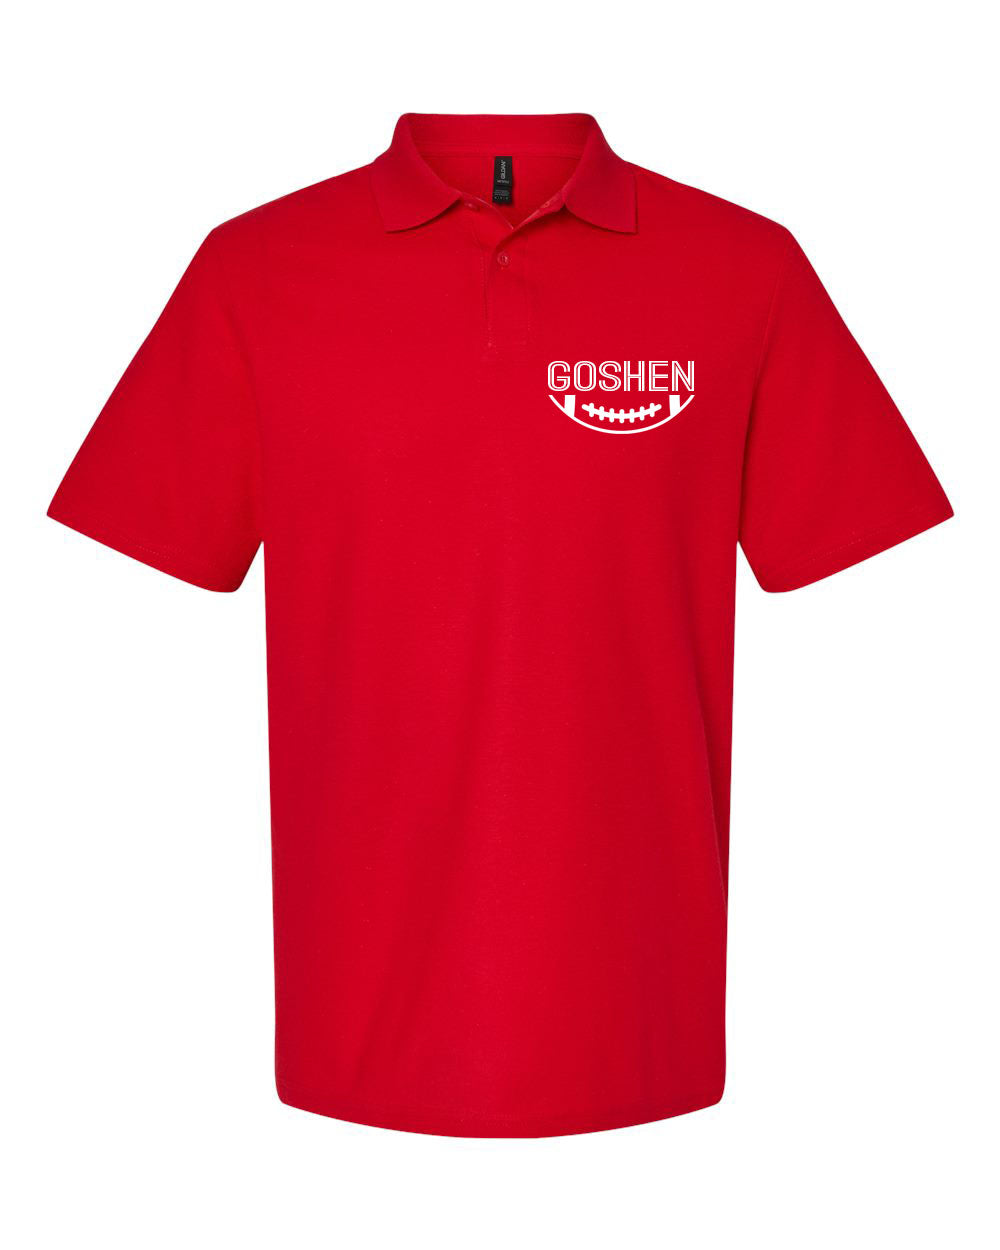 Goshen Football Design 3 Polo T-Shirt